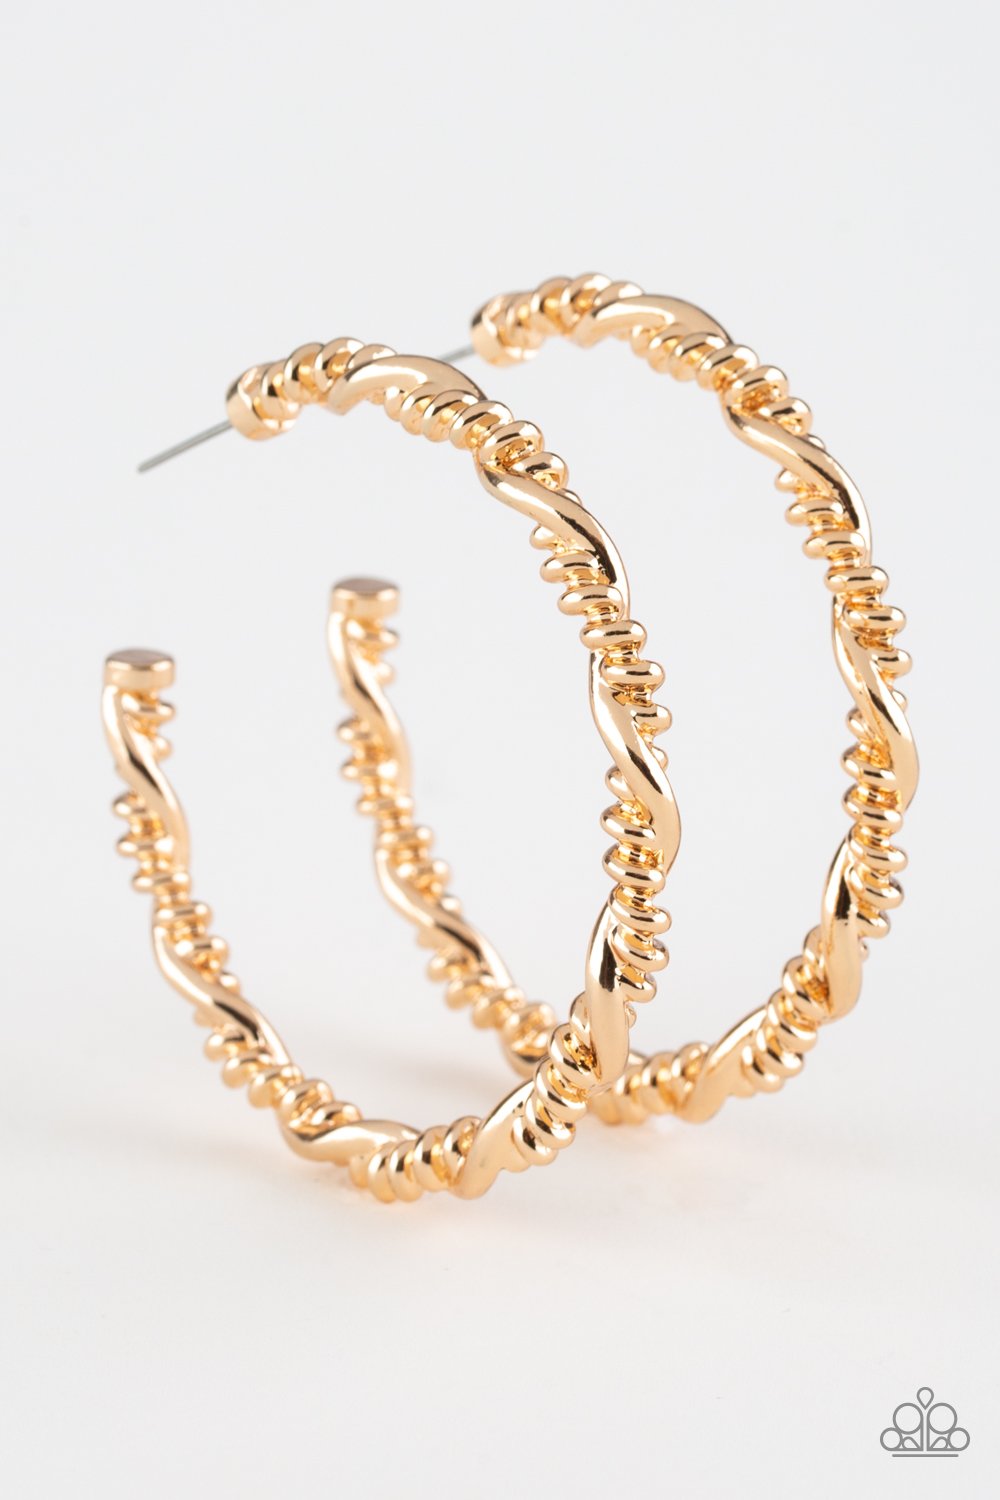 Street Mod Gold Hoop Earrings freeshipping - JewLz4u Gemstone Gallery